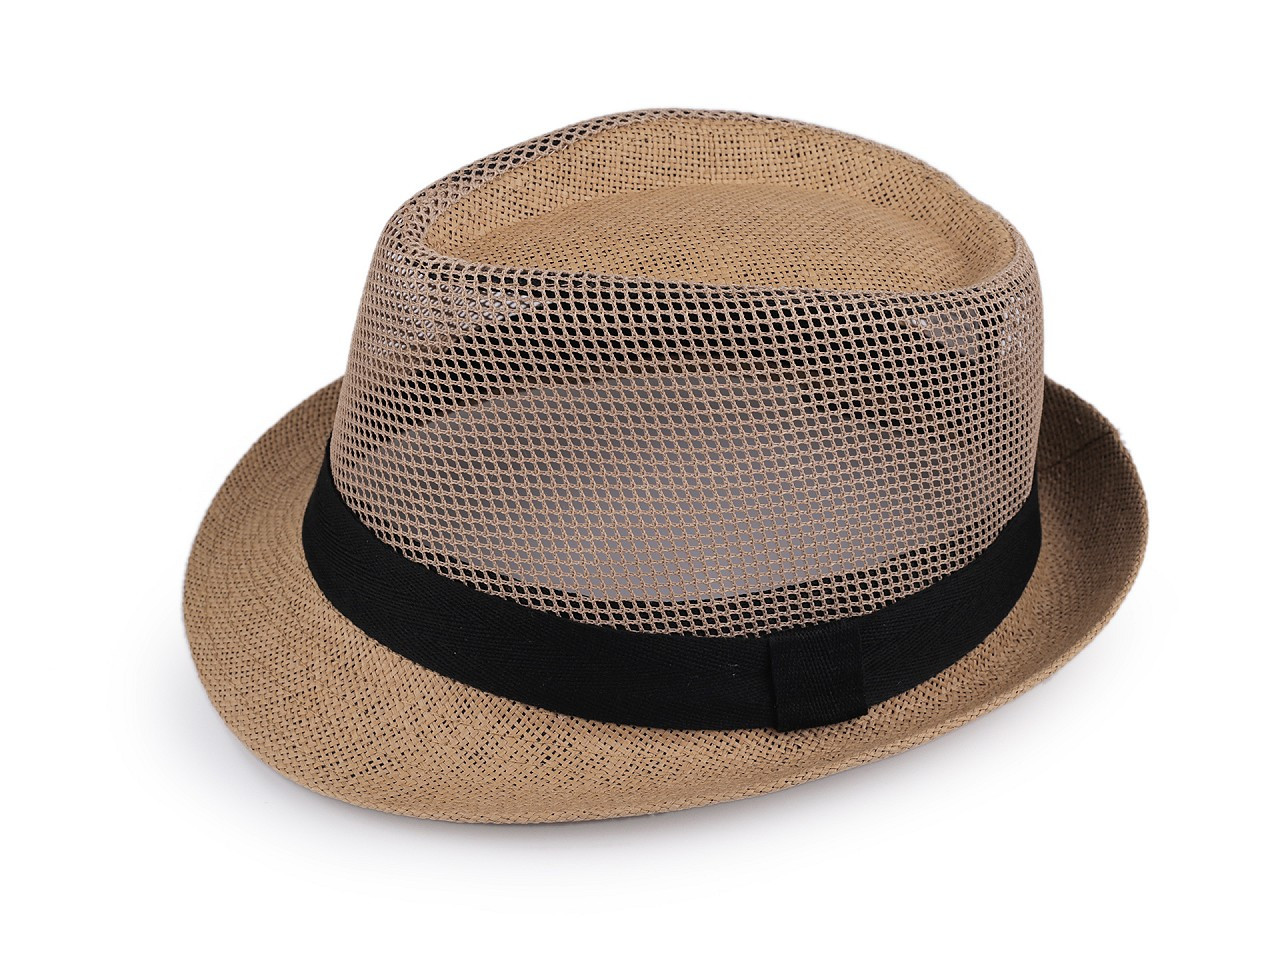 Letní klobouk / slamák unisex, barva 12 přírodní tm.